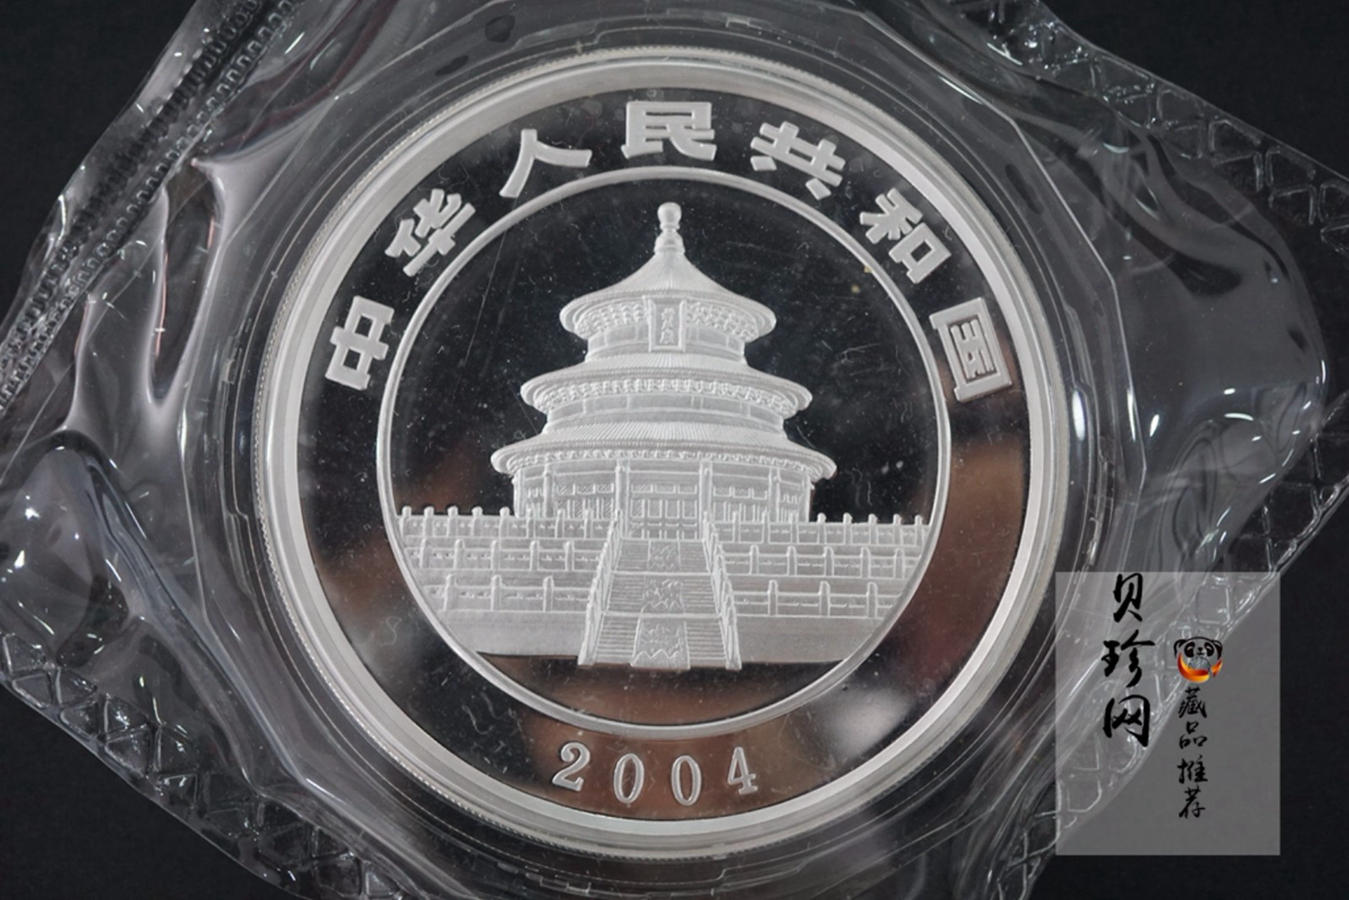 【040108】2004版熊猫银纪念币-母子熊猫5盎司精制银币